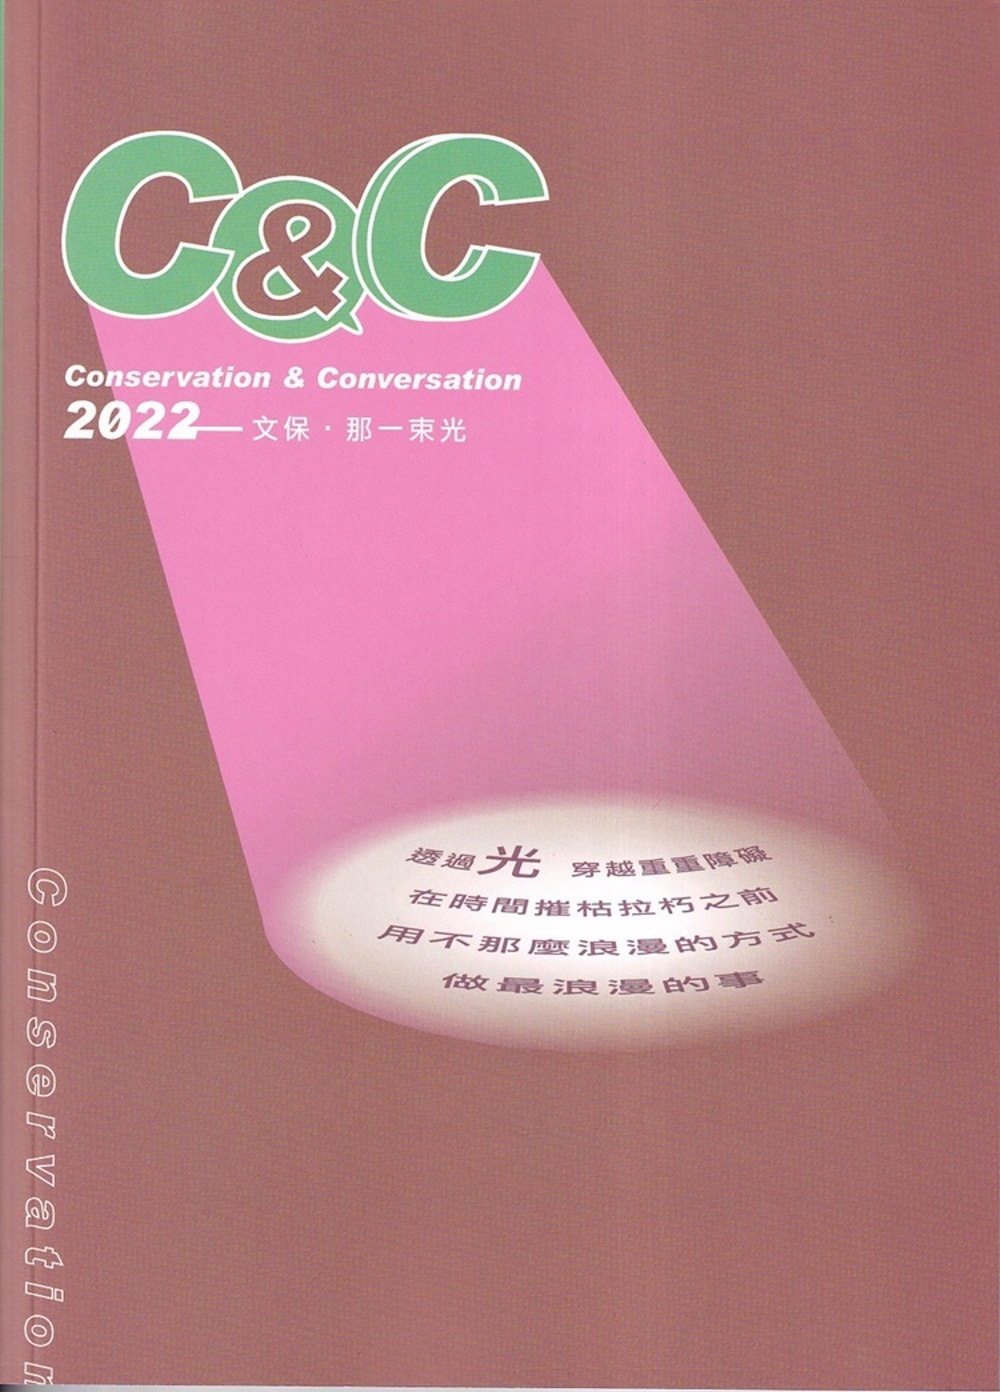 Conservation & conversation．2022 - 文保．那一束光